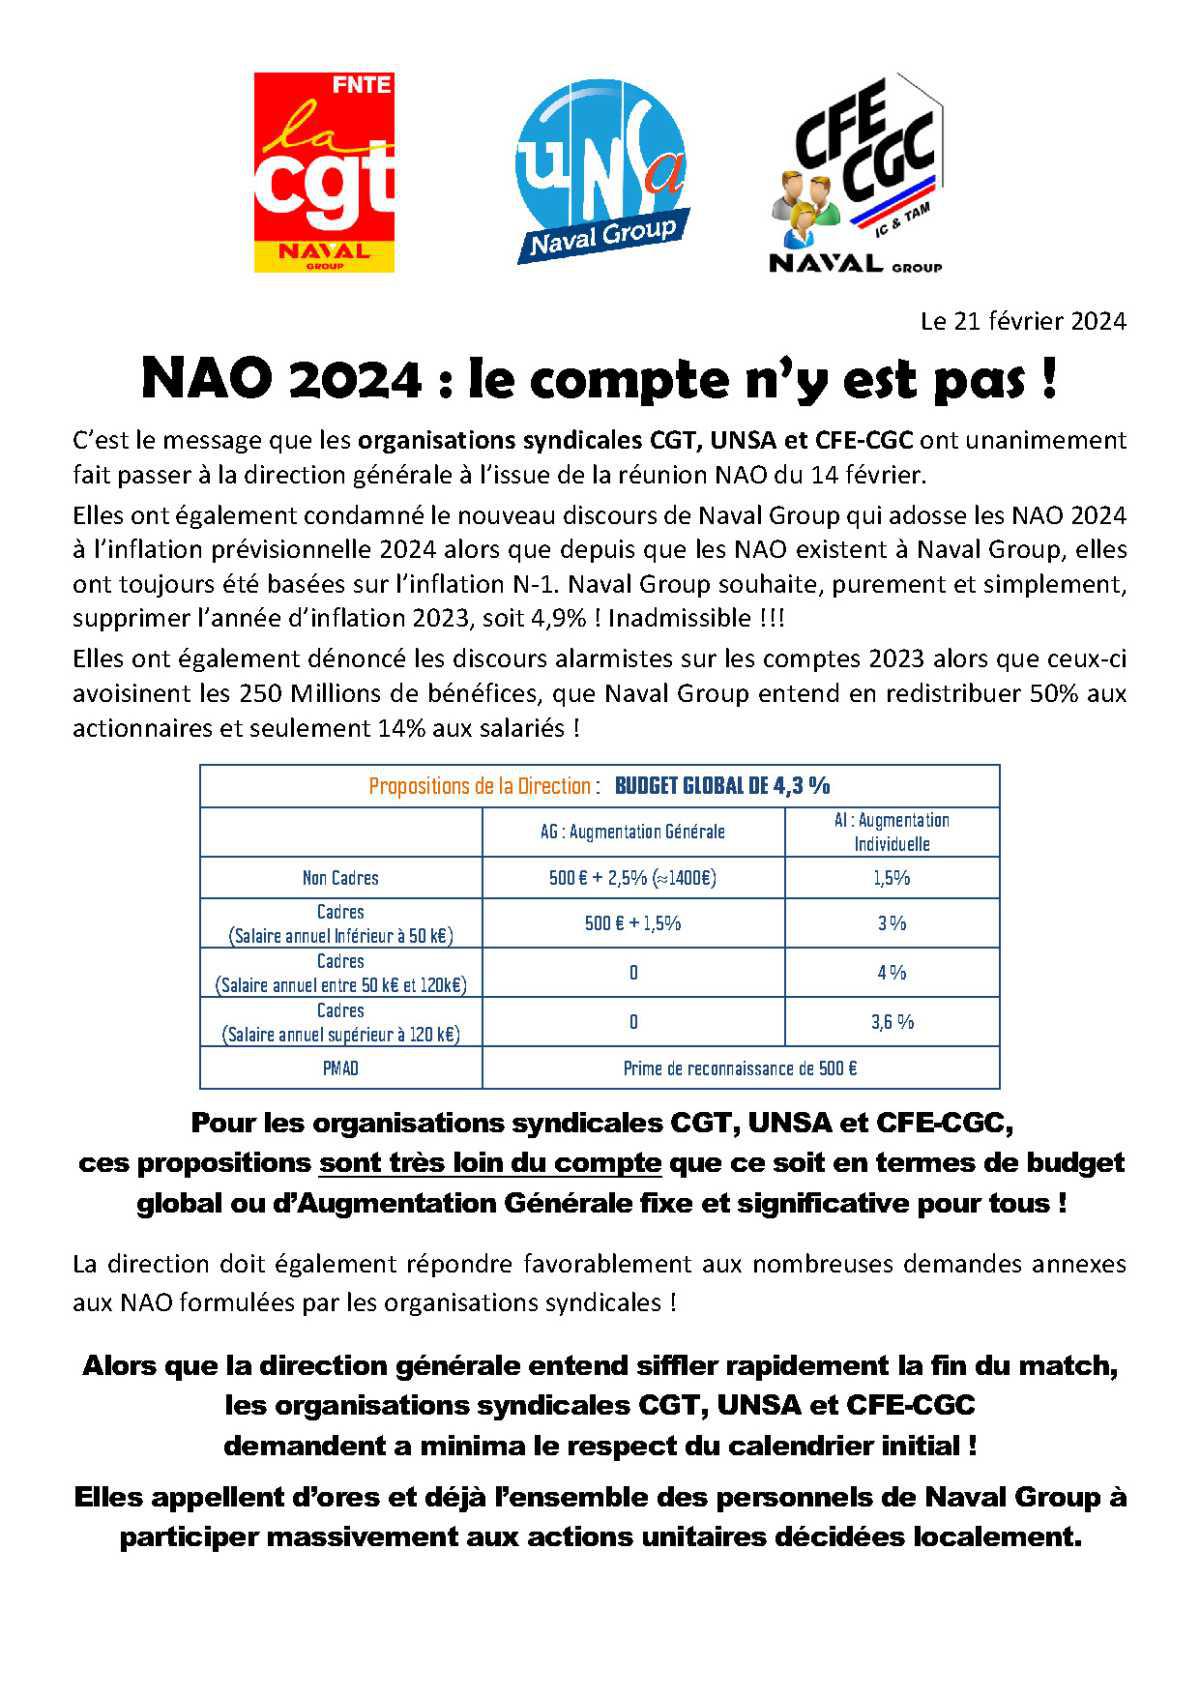 Réunion du 21 février 2024 - DL CGT/UNSA/CFE-CGC et DL UNSA